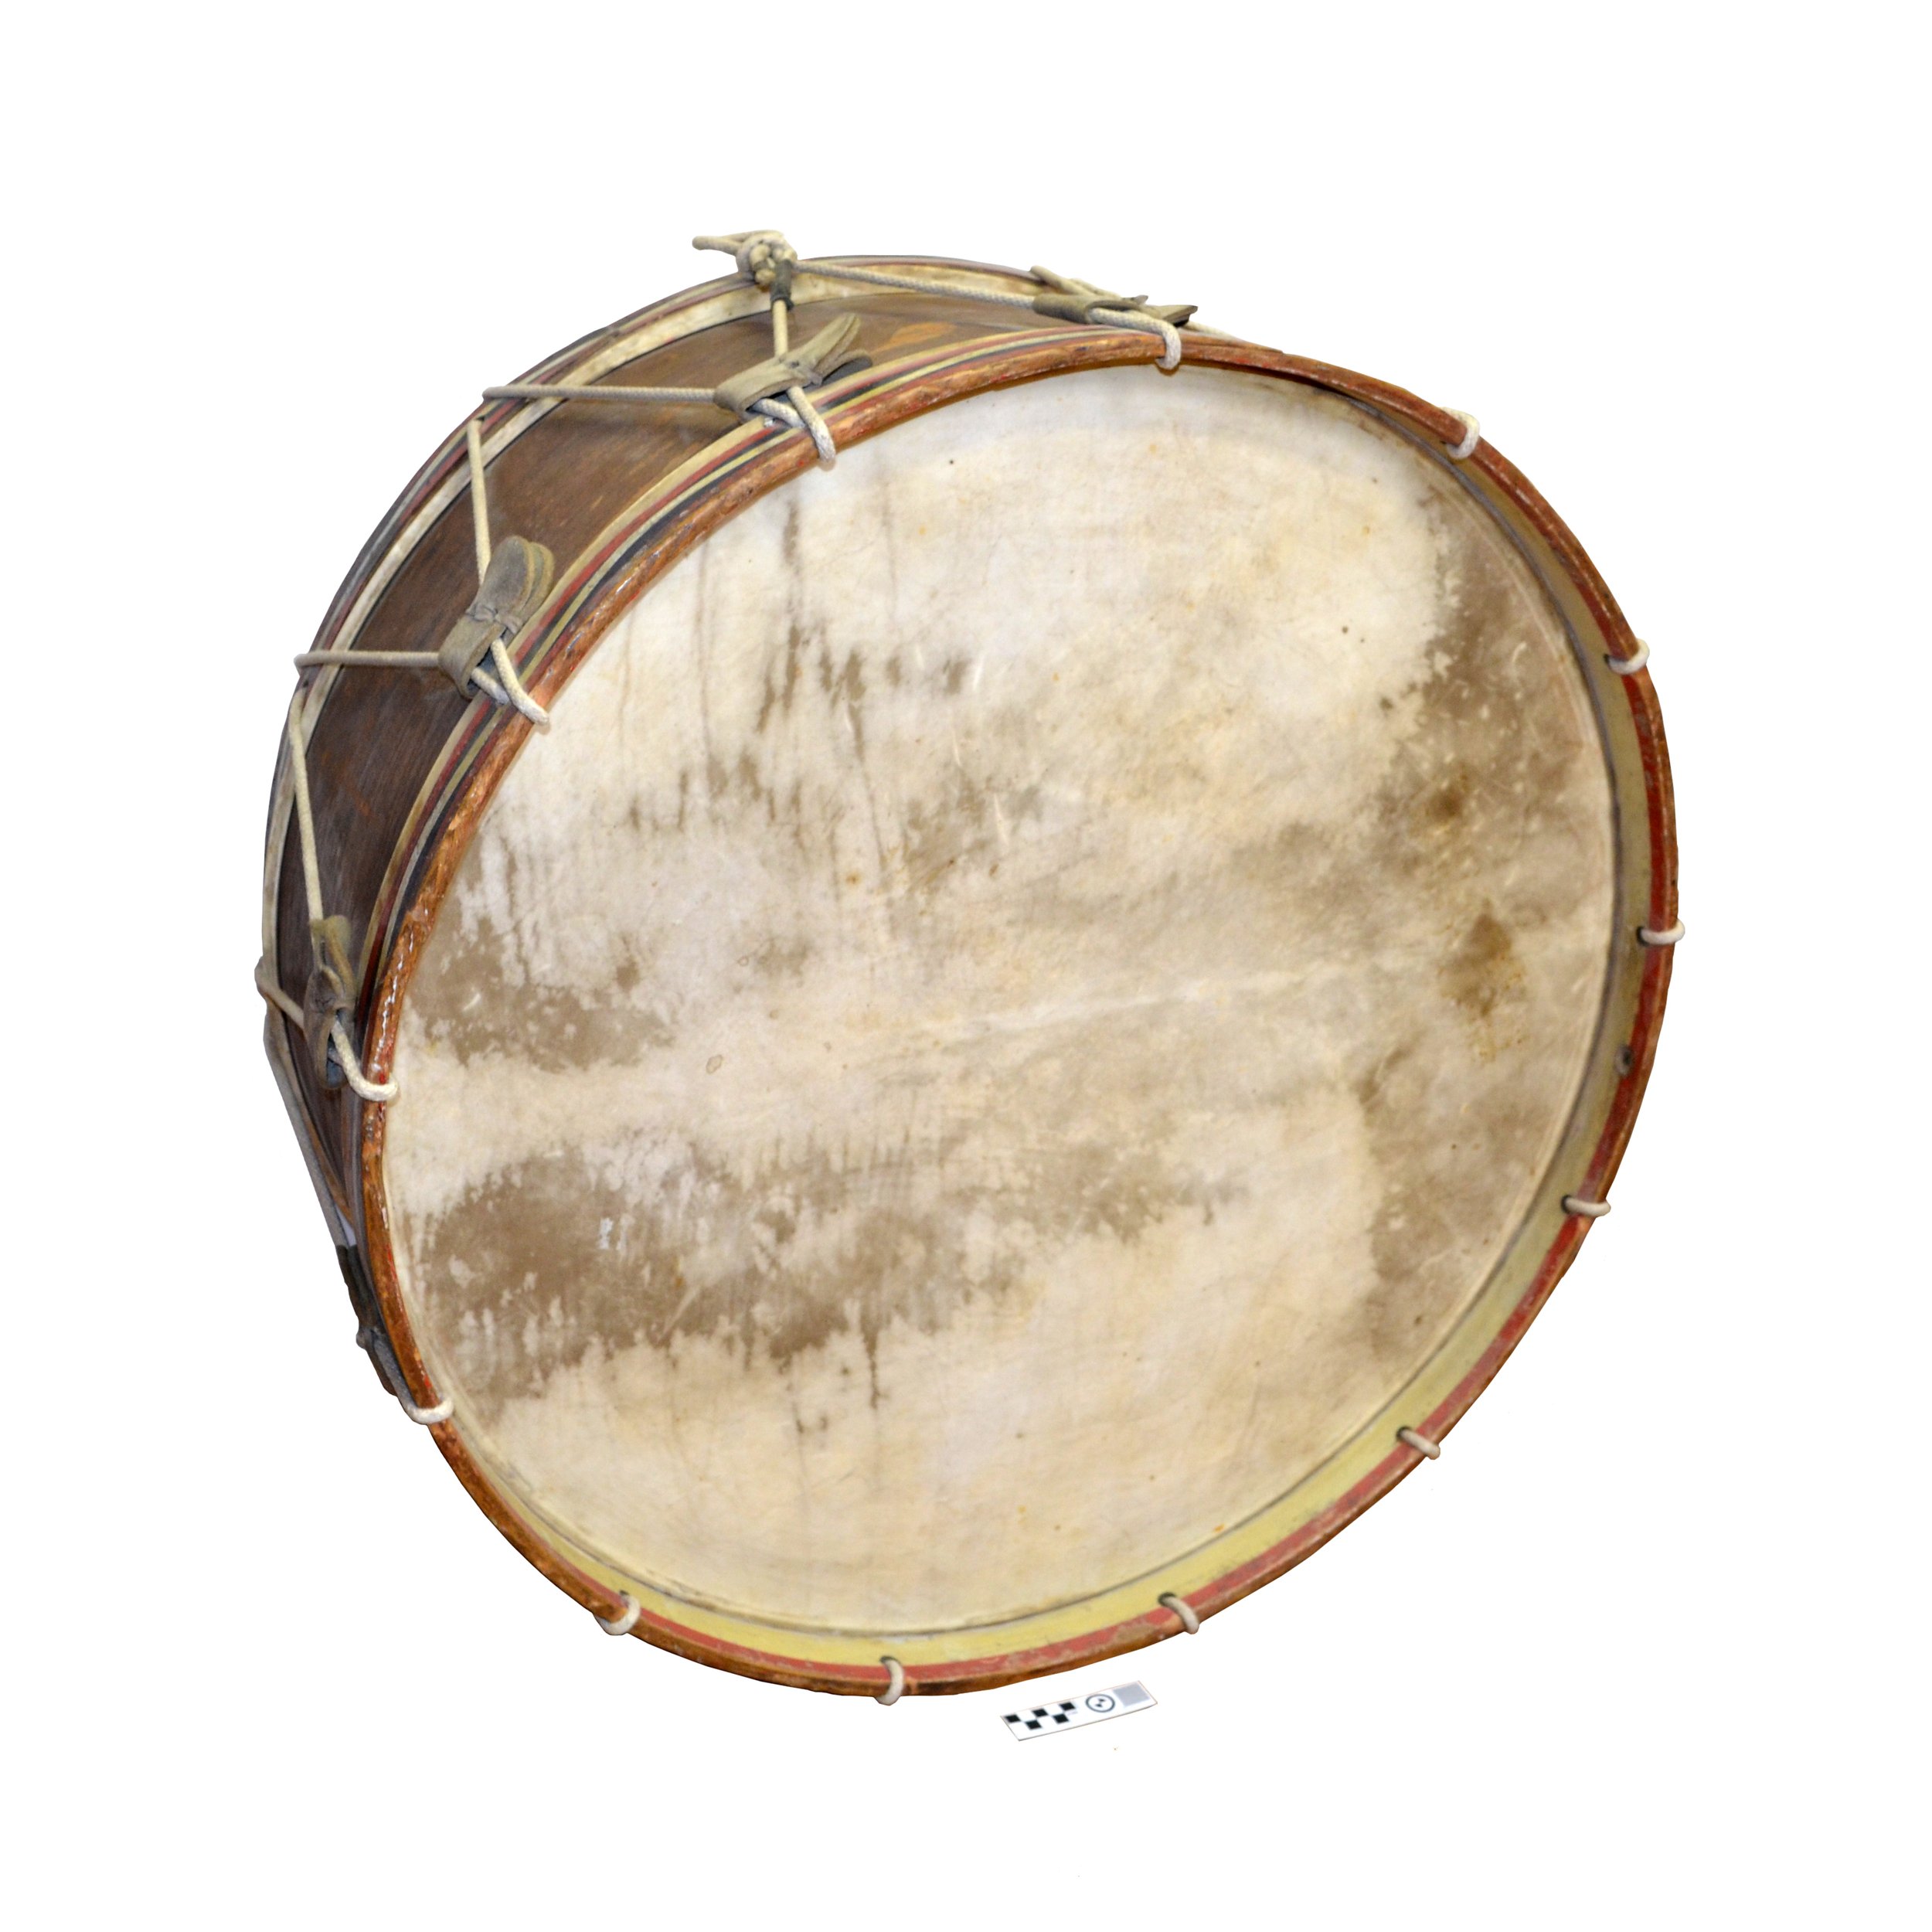 Bass Drum from Summerland's First Town Band / Grosse caisse de la première  fanfare municipale de Summerland — Summerland Museum and archives